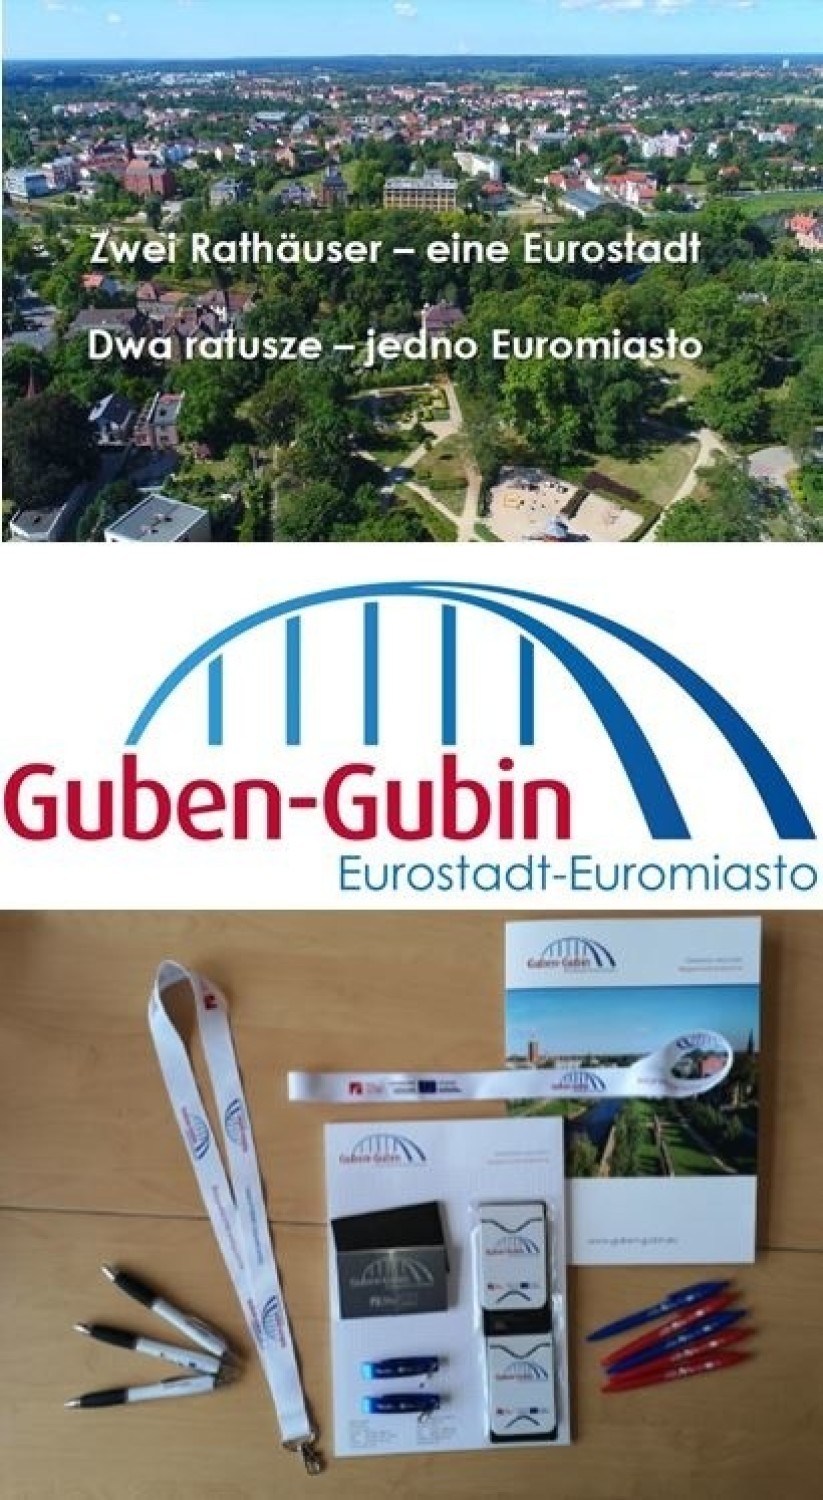 Guben–Gubin bezgranicznie połączone                                            